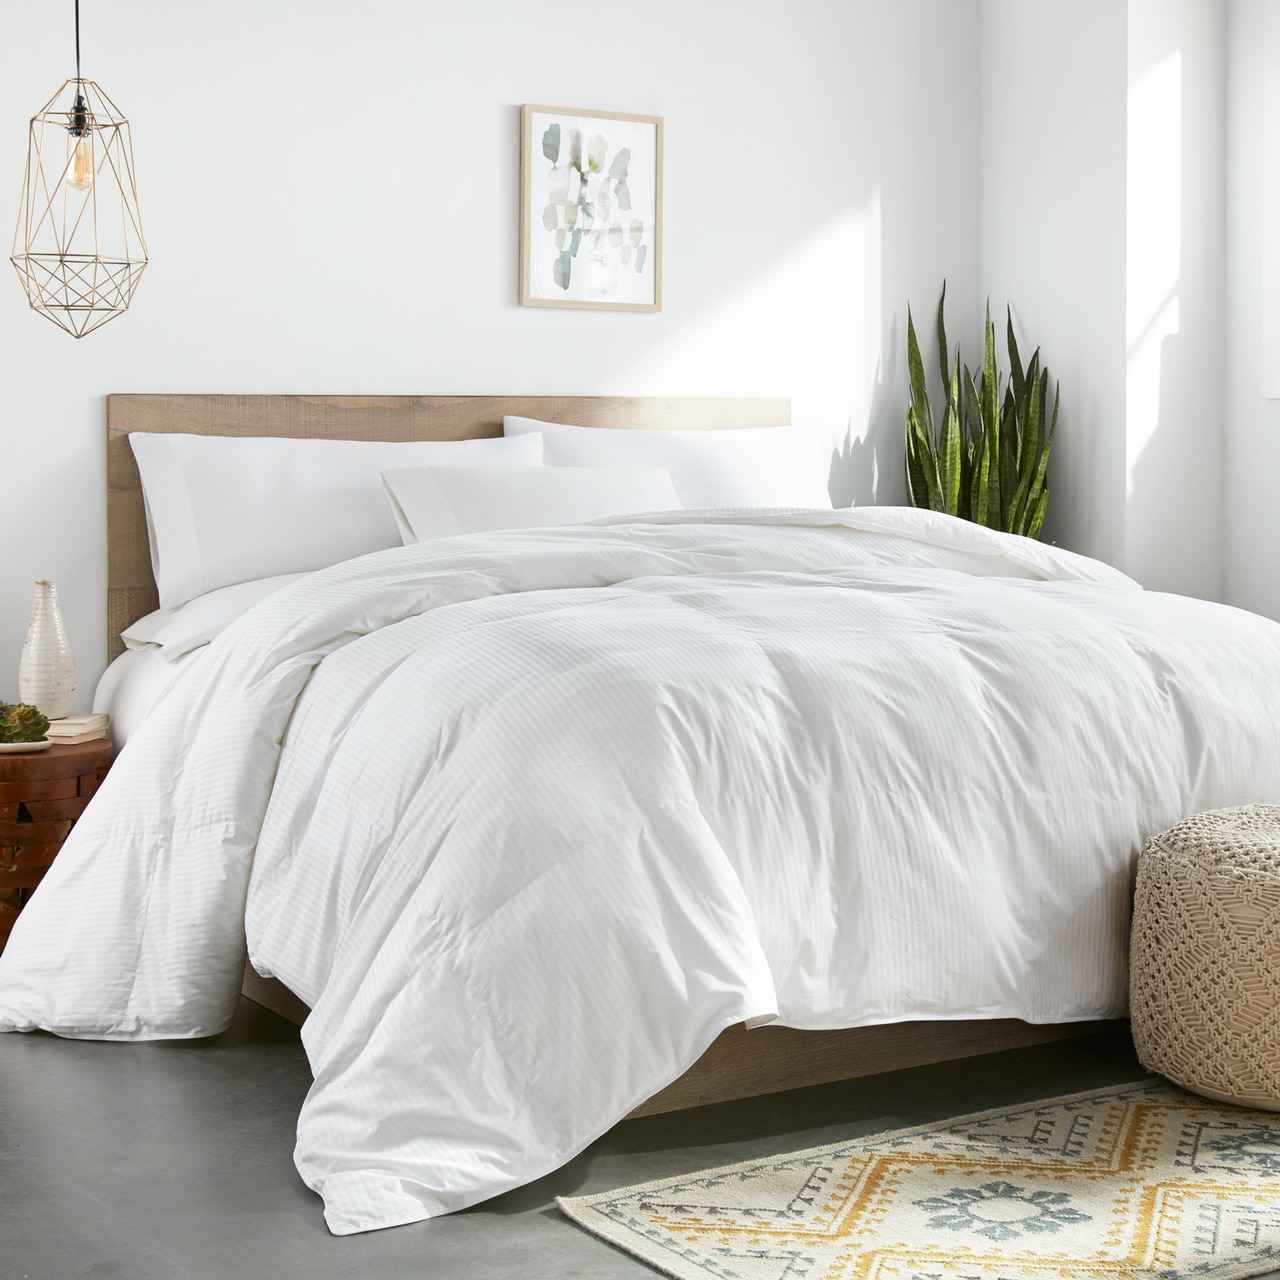 Lv Ver 23 Luxury Bedding Sets Quilt Sets Duvet Cover